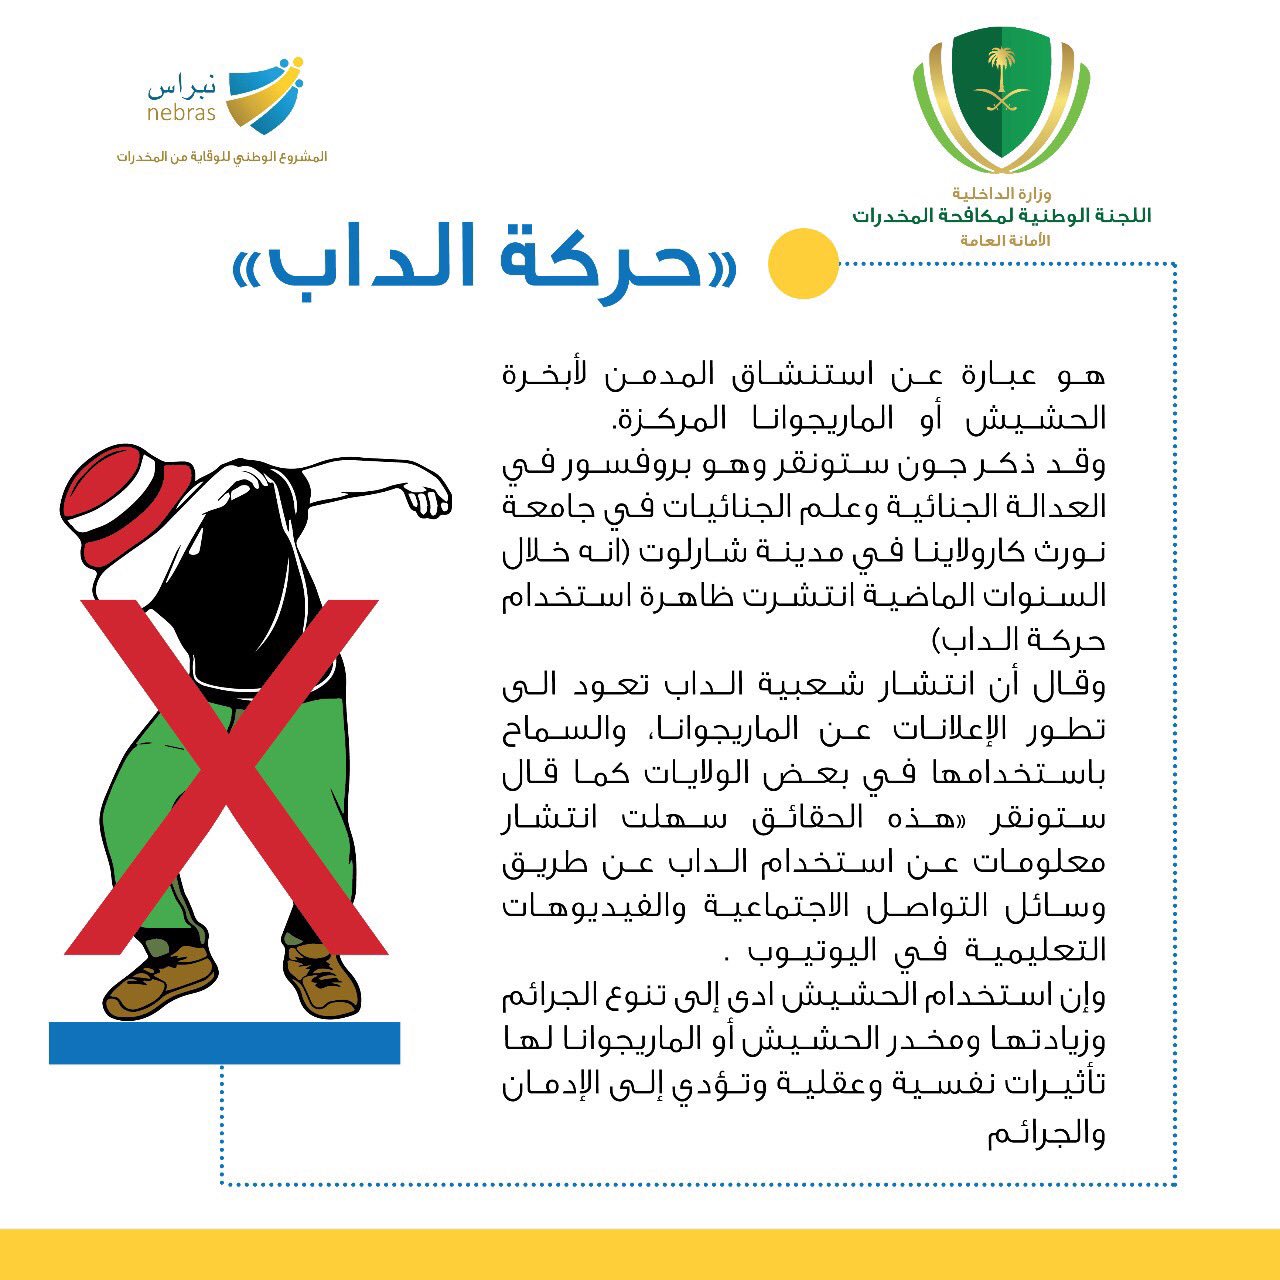 Poster des saudischen Innenministeriums gegen Dabbing